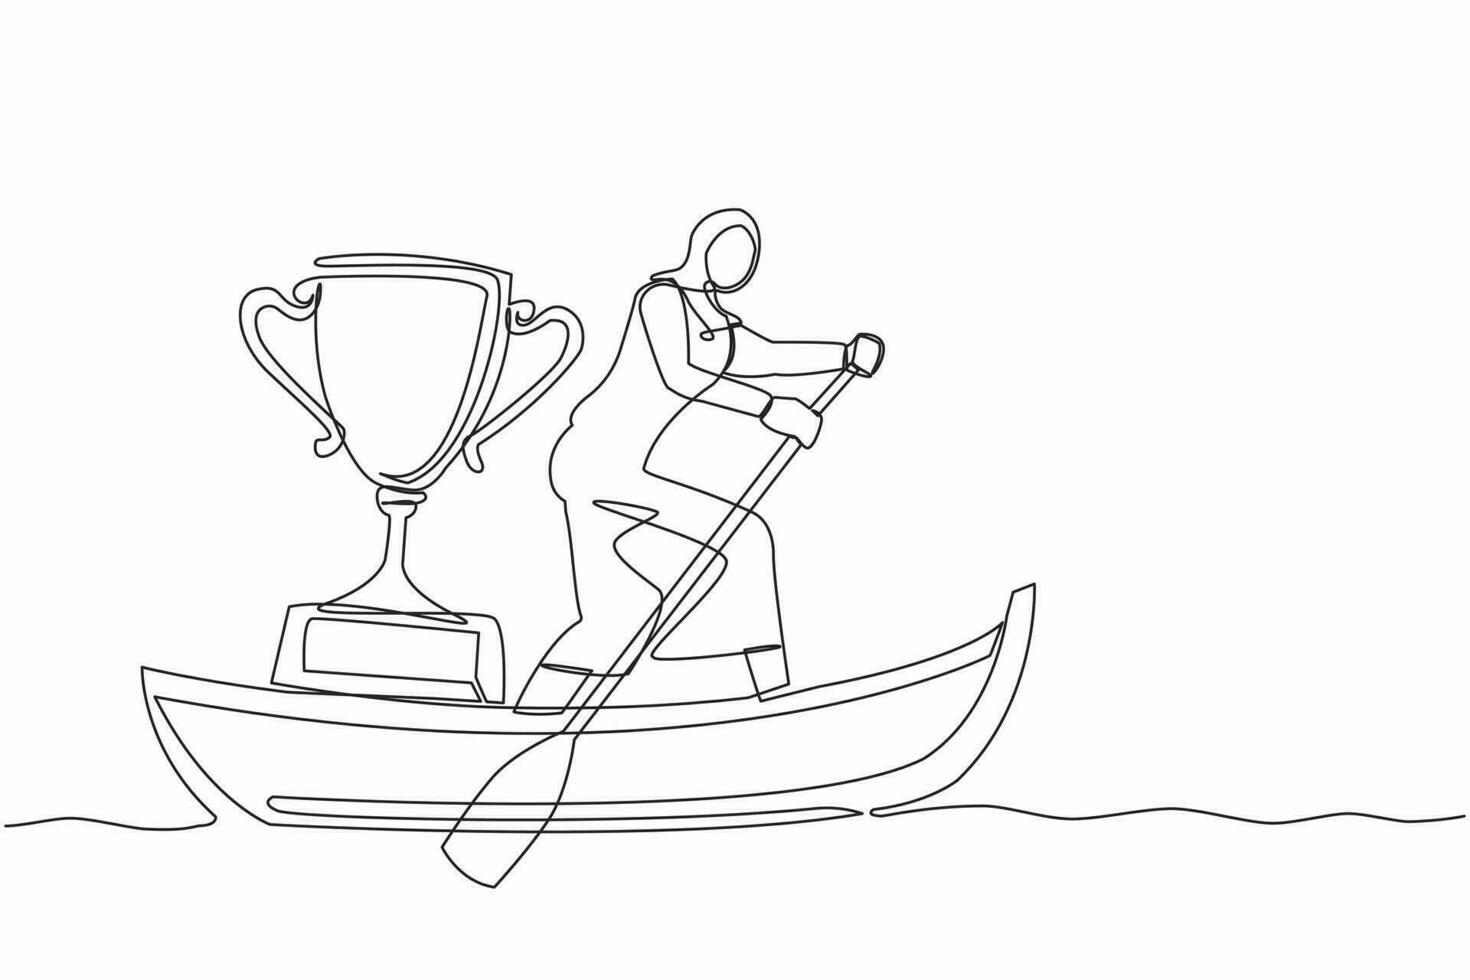 singolo continuo linea disegno arabo donna d'affari in piedi nel barca e andare in barca con trofeo. acqua gli sport concorrenza. andare in barca campionato riconoscimento premio. uno linea disegnare design vettore illustrazione